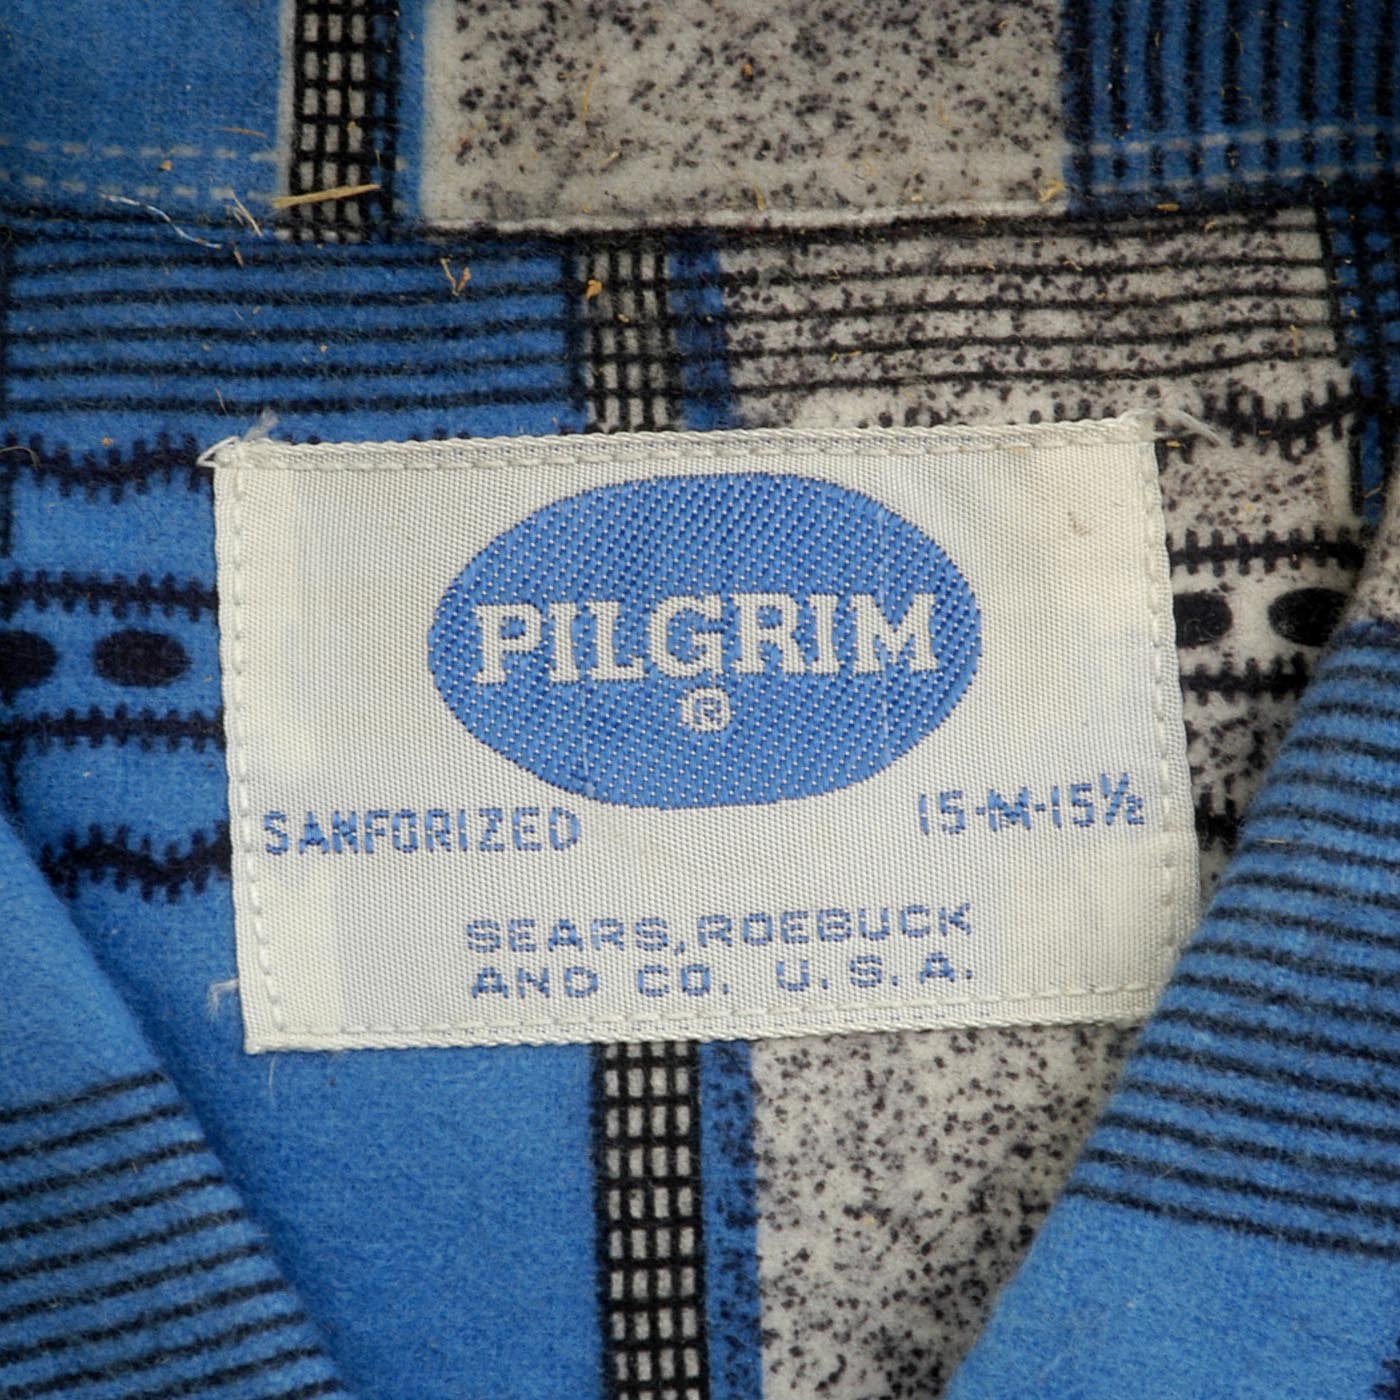 Deadstock 1950s Men's Pilgrim Blue Flannel Shirt